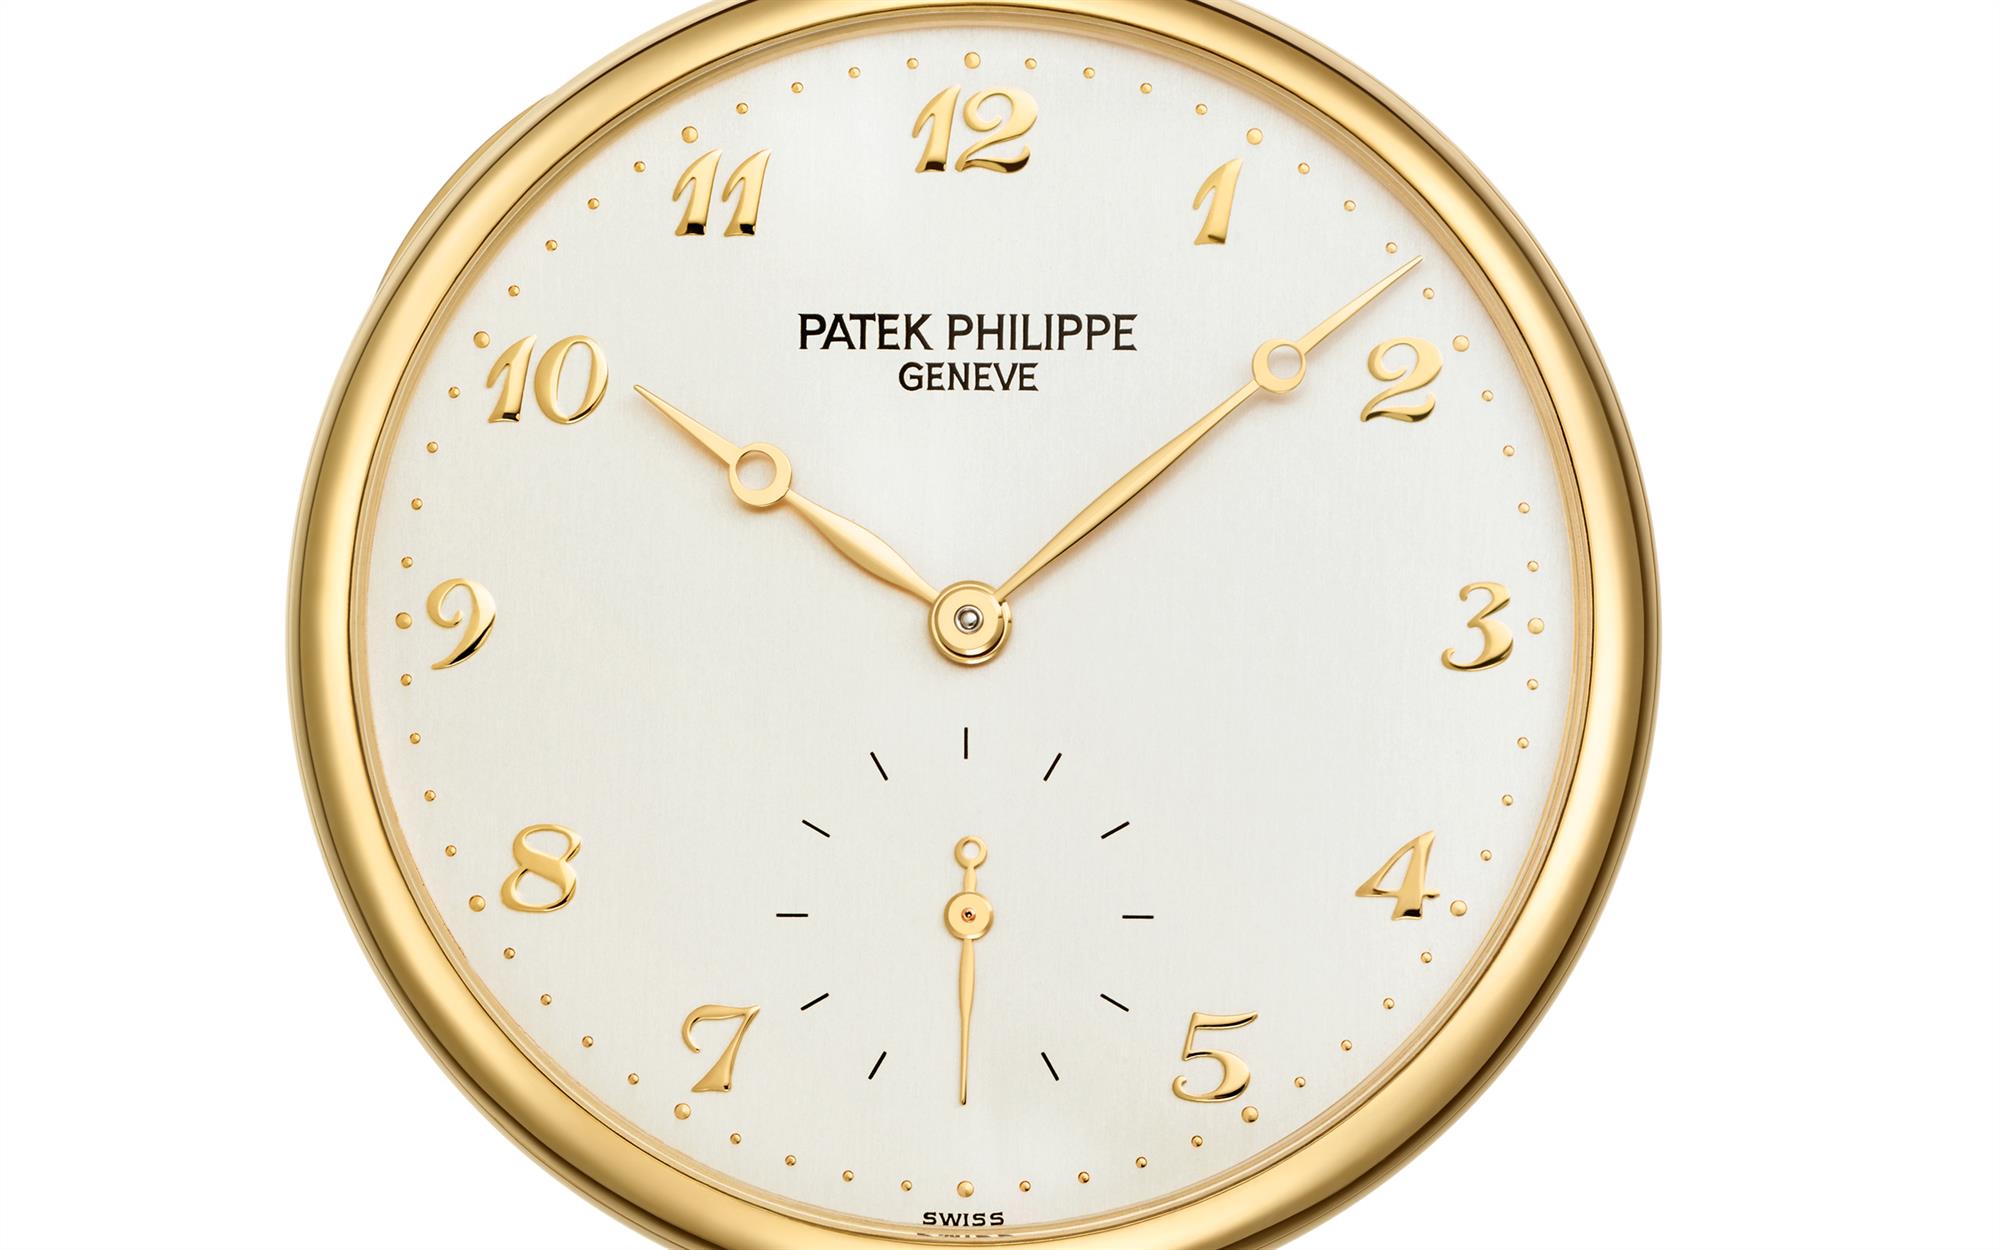 Patek Philippe Calatrava 18K Gold Handaufzug Manual Service 07.2020Patek Philippe Grand Complications Perpetual Calendar (Full Set)